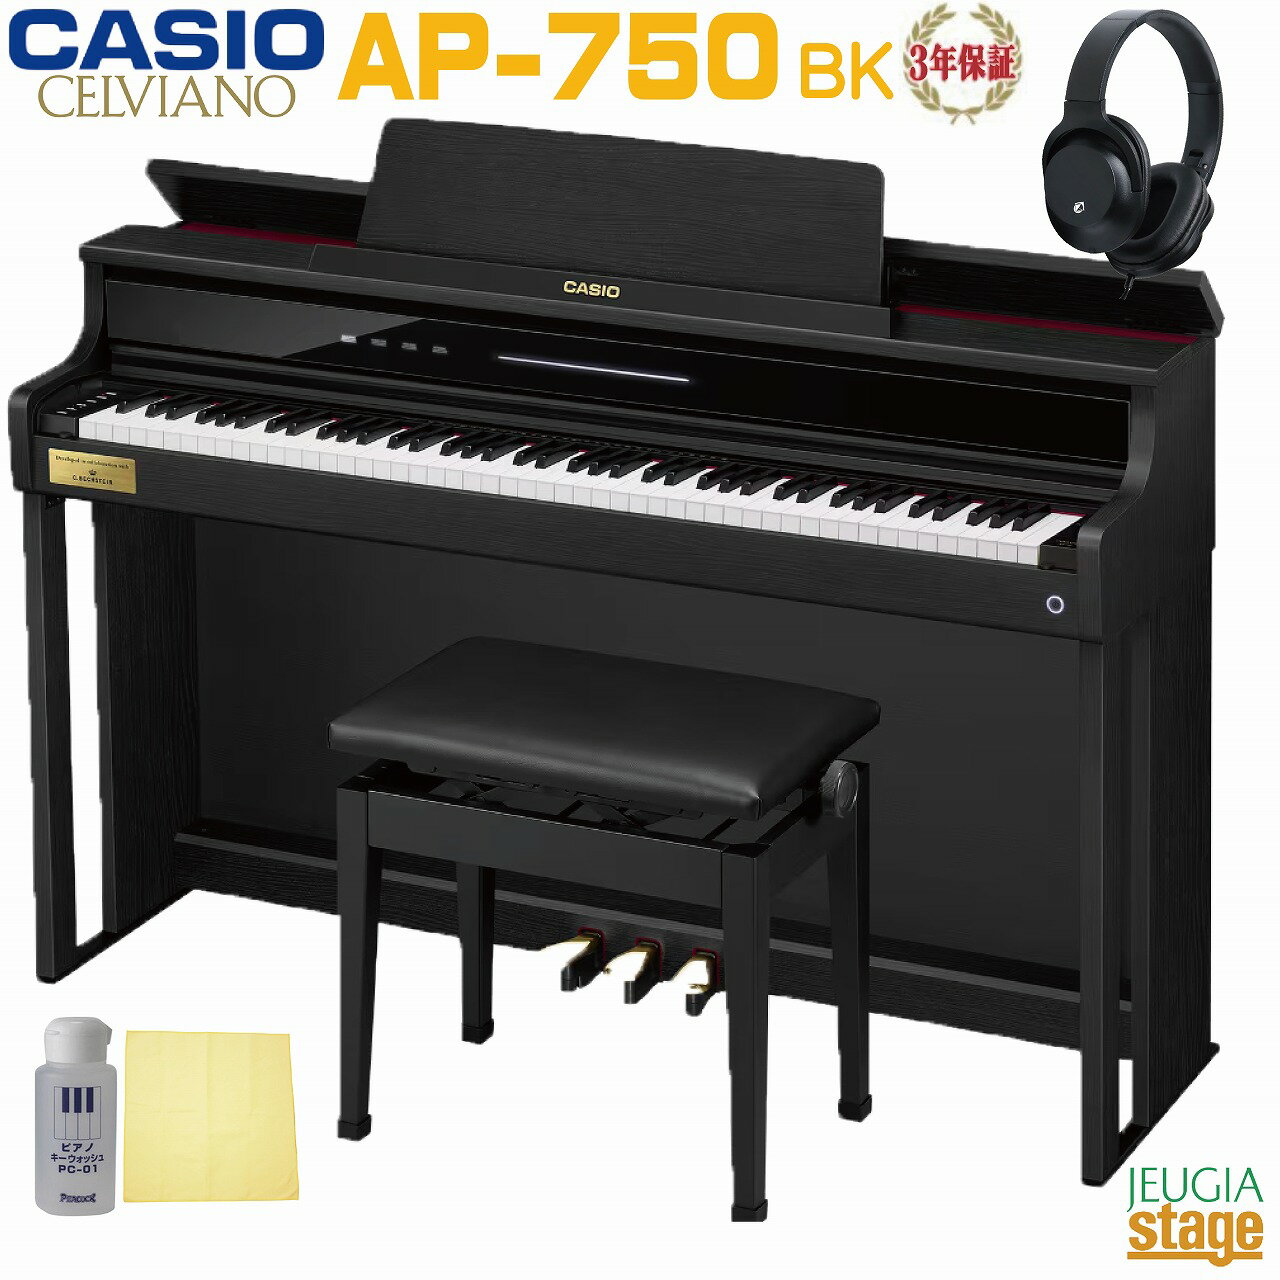 CASIO AP-750BK CELVIANOカシオ デジタルピアノ セルヴィアーノ ブラックウッド調電子ピアノ かしお おすすめ 人気 定番 黒 木製